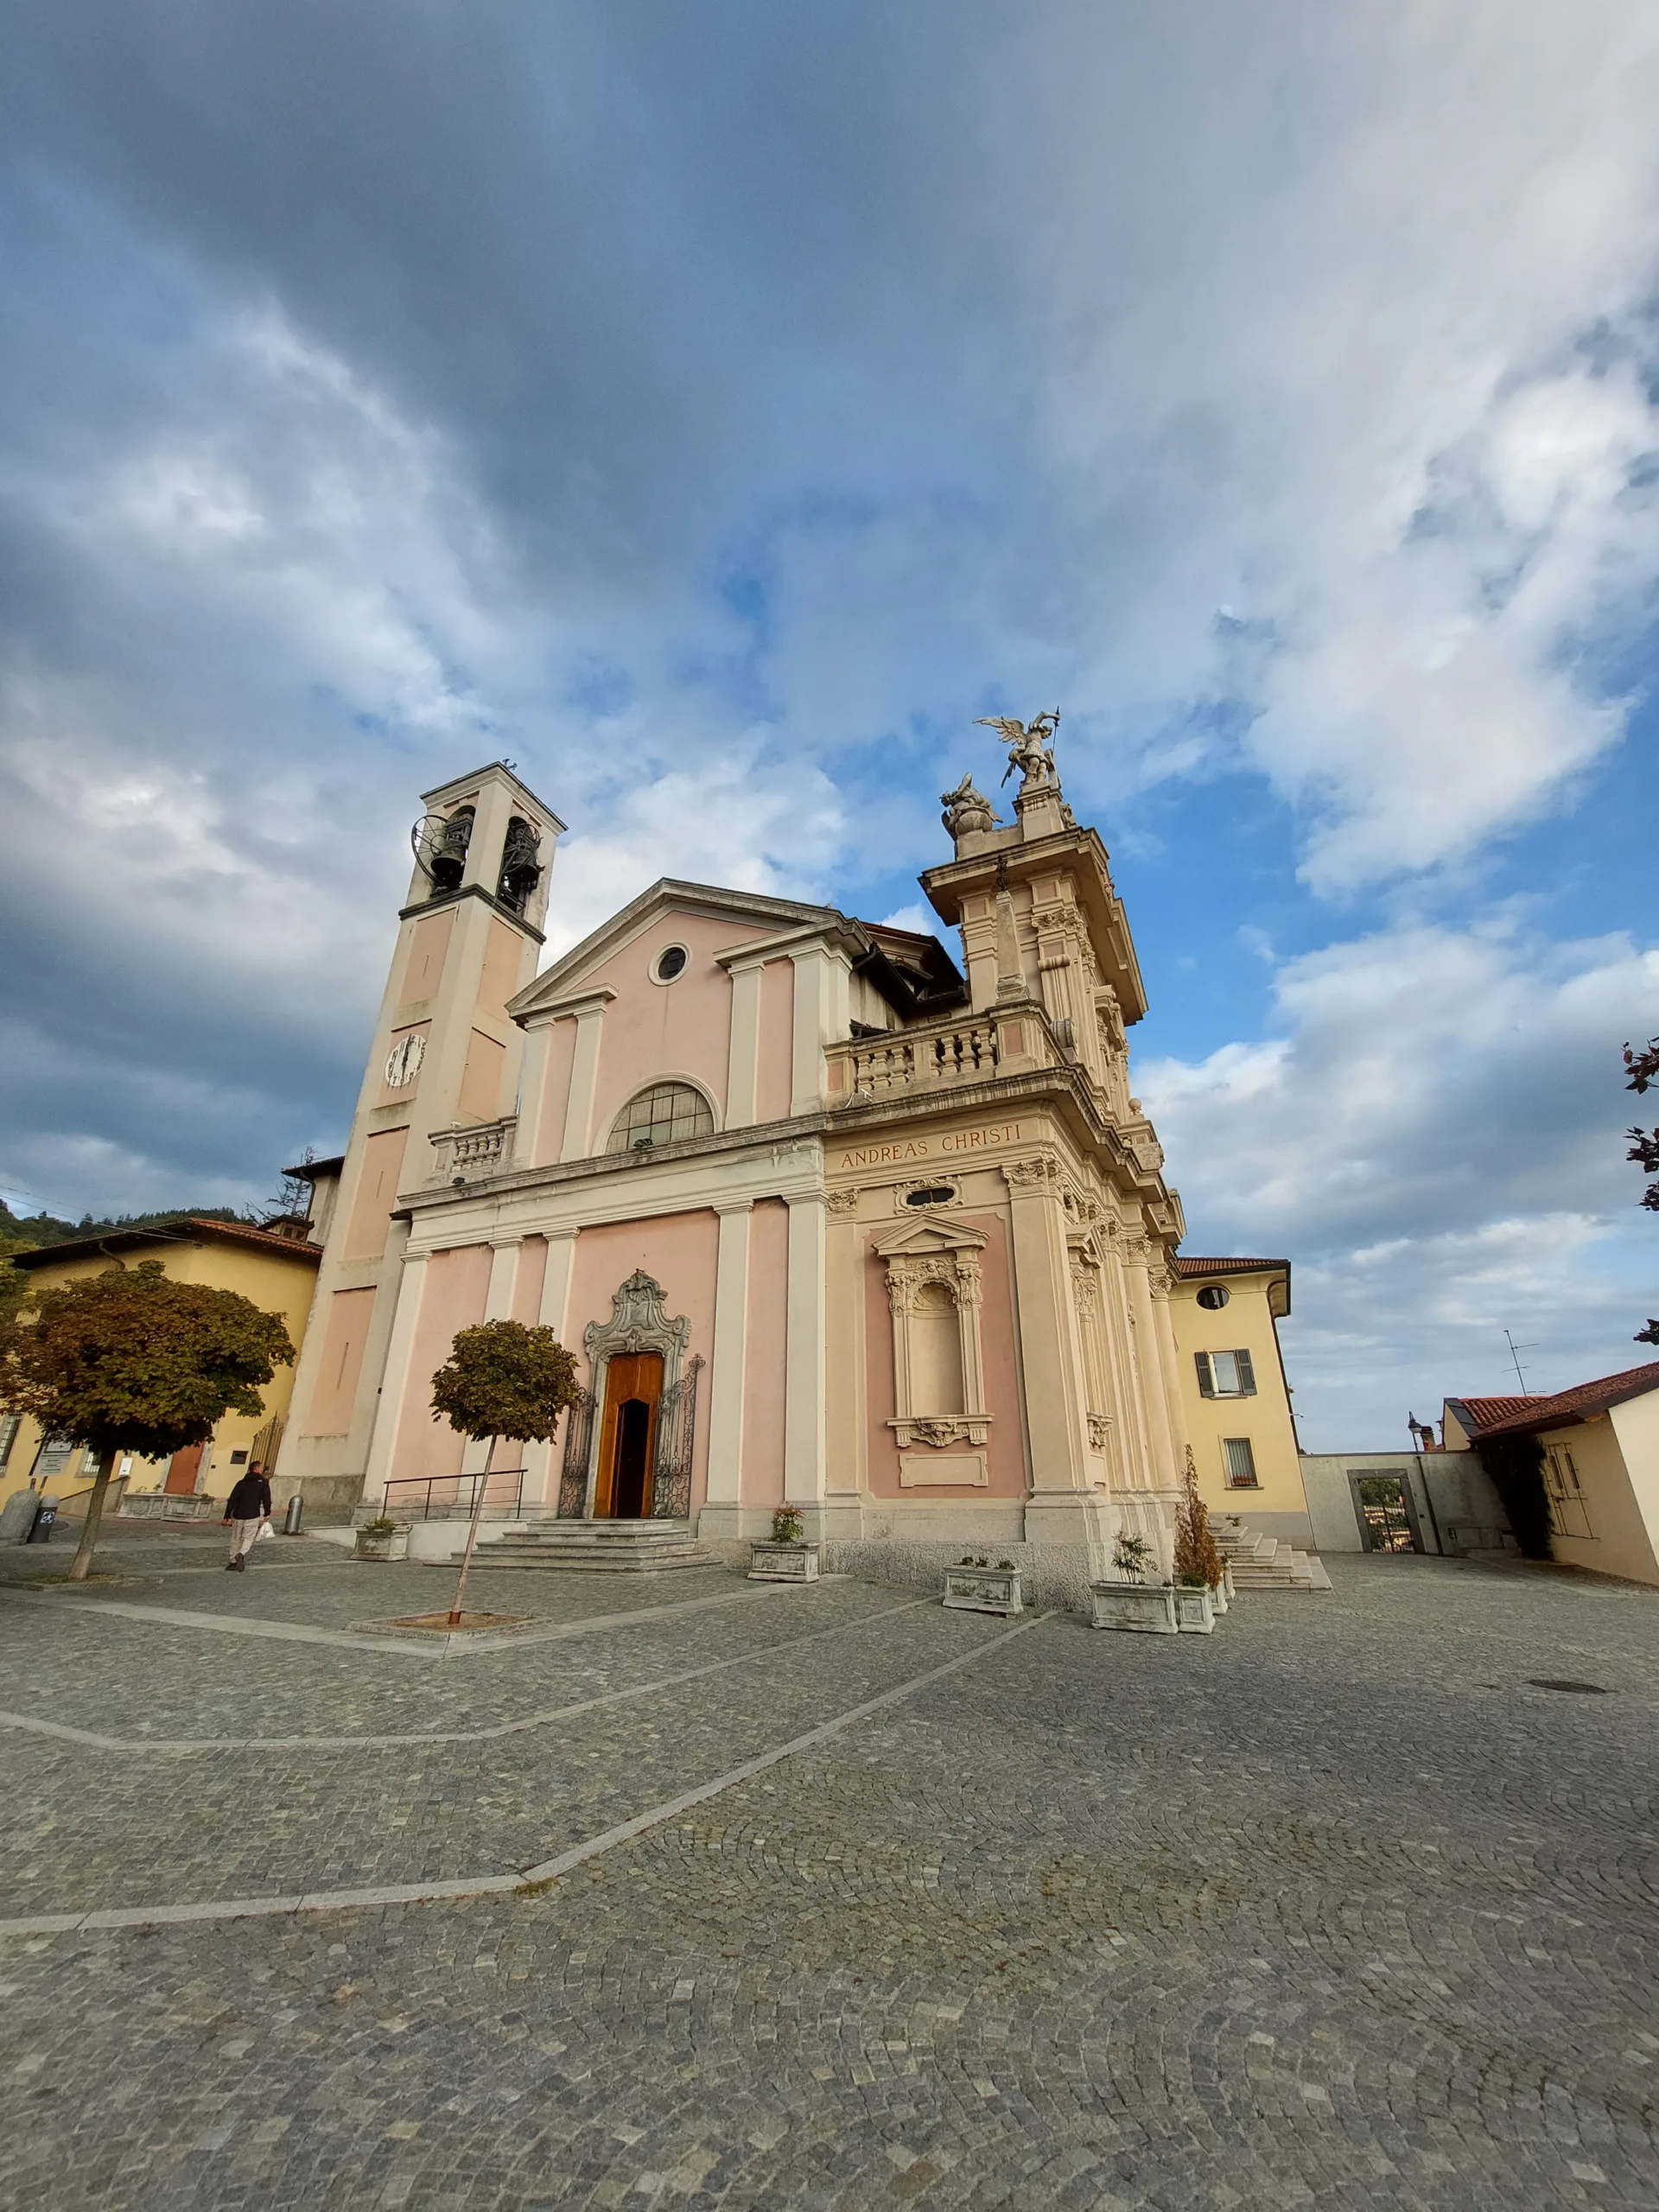 Η καθολική Εκκλησία Chiesa di Sant'Andrea Apostolo στο Brunate, Κόμο, Ιταλία.